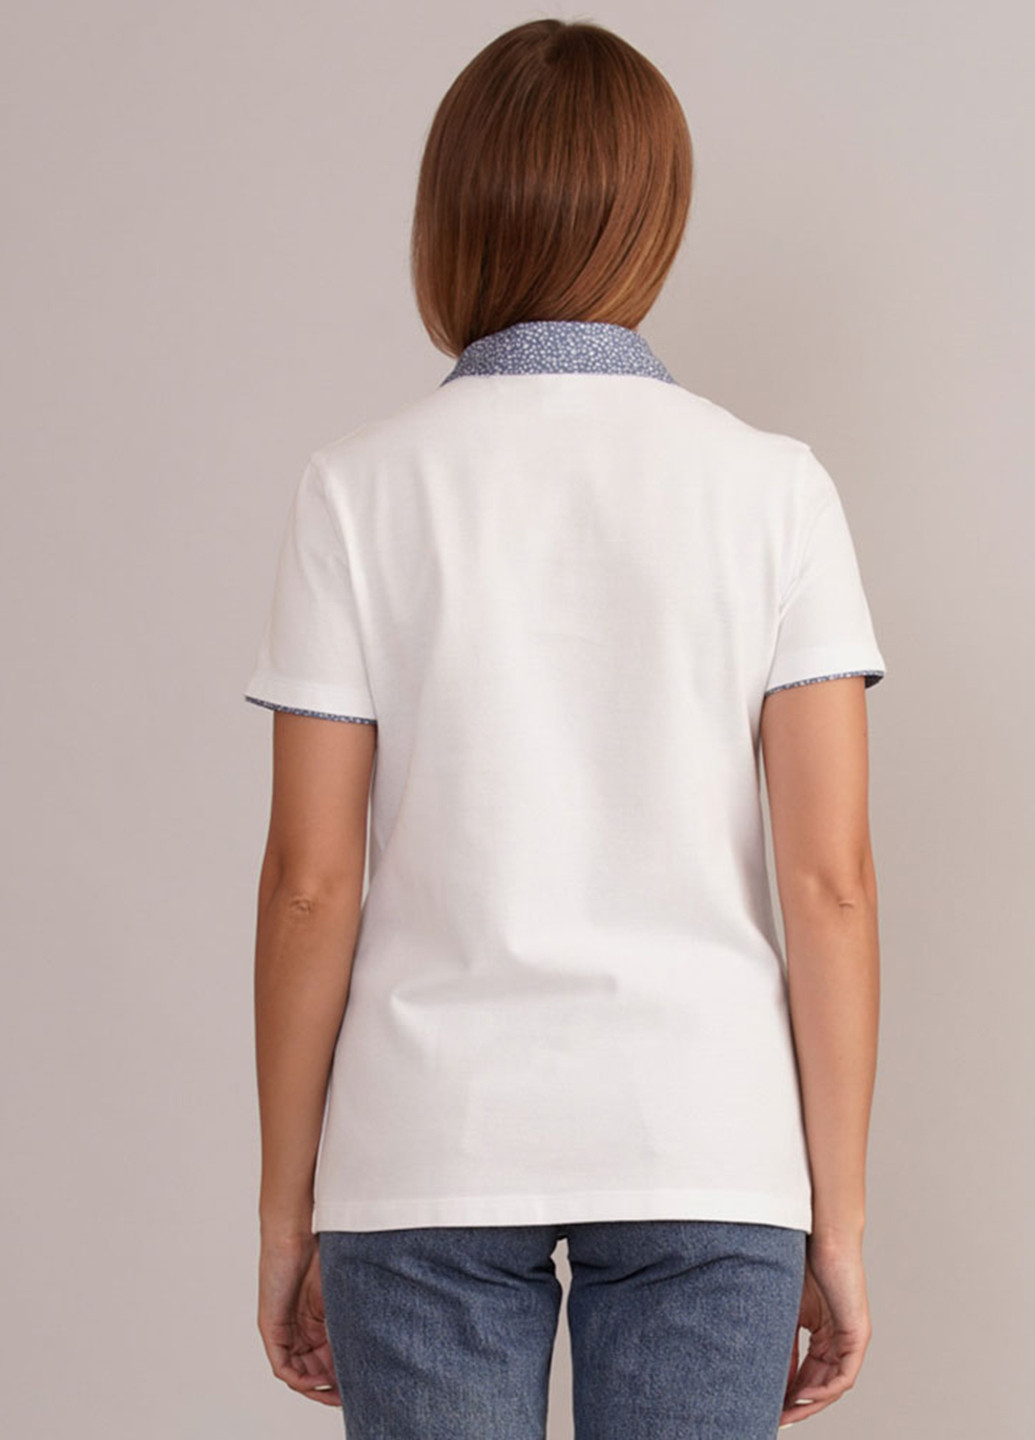 Белая женская футболка-поло Promin. однотонная